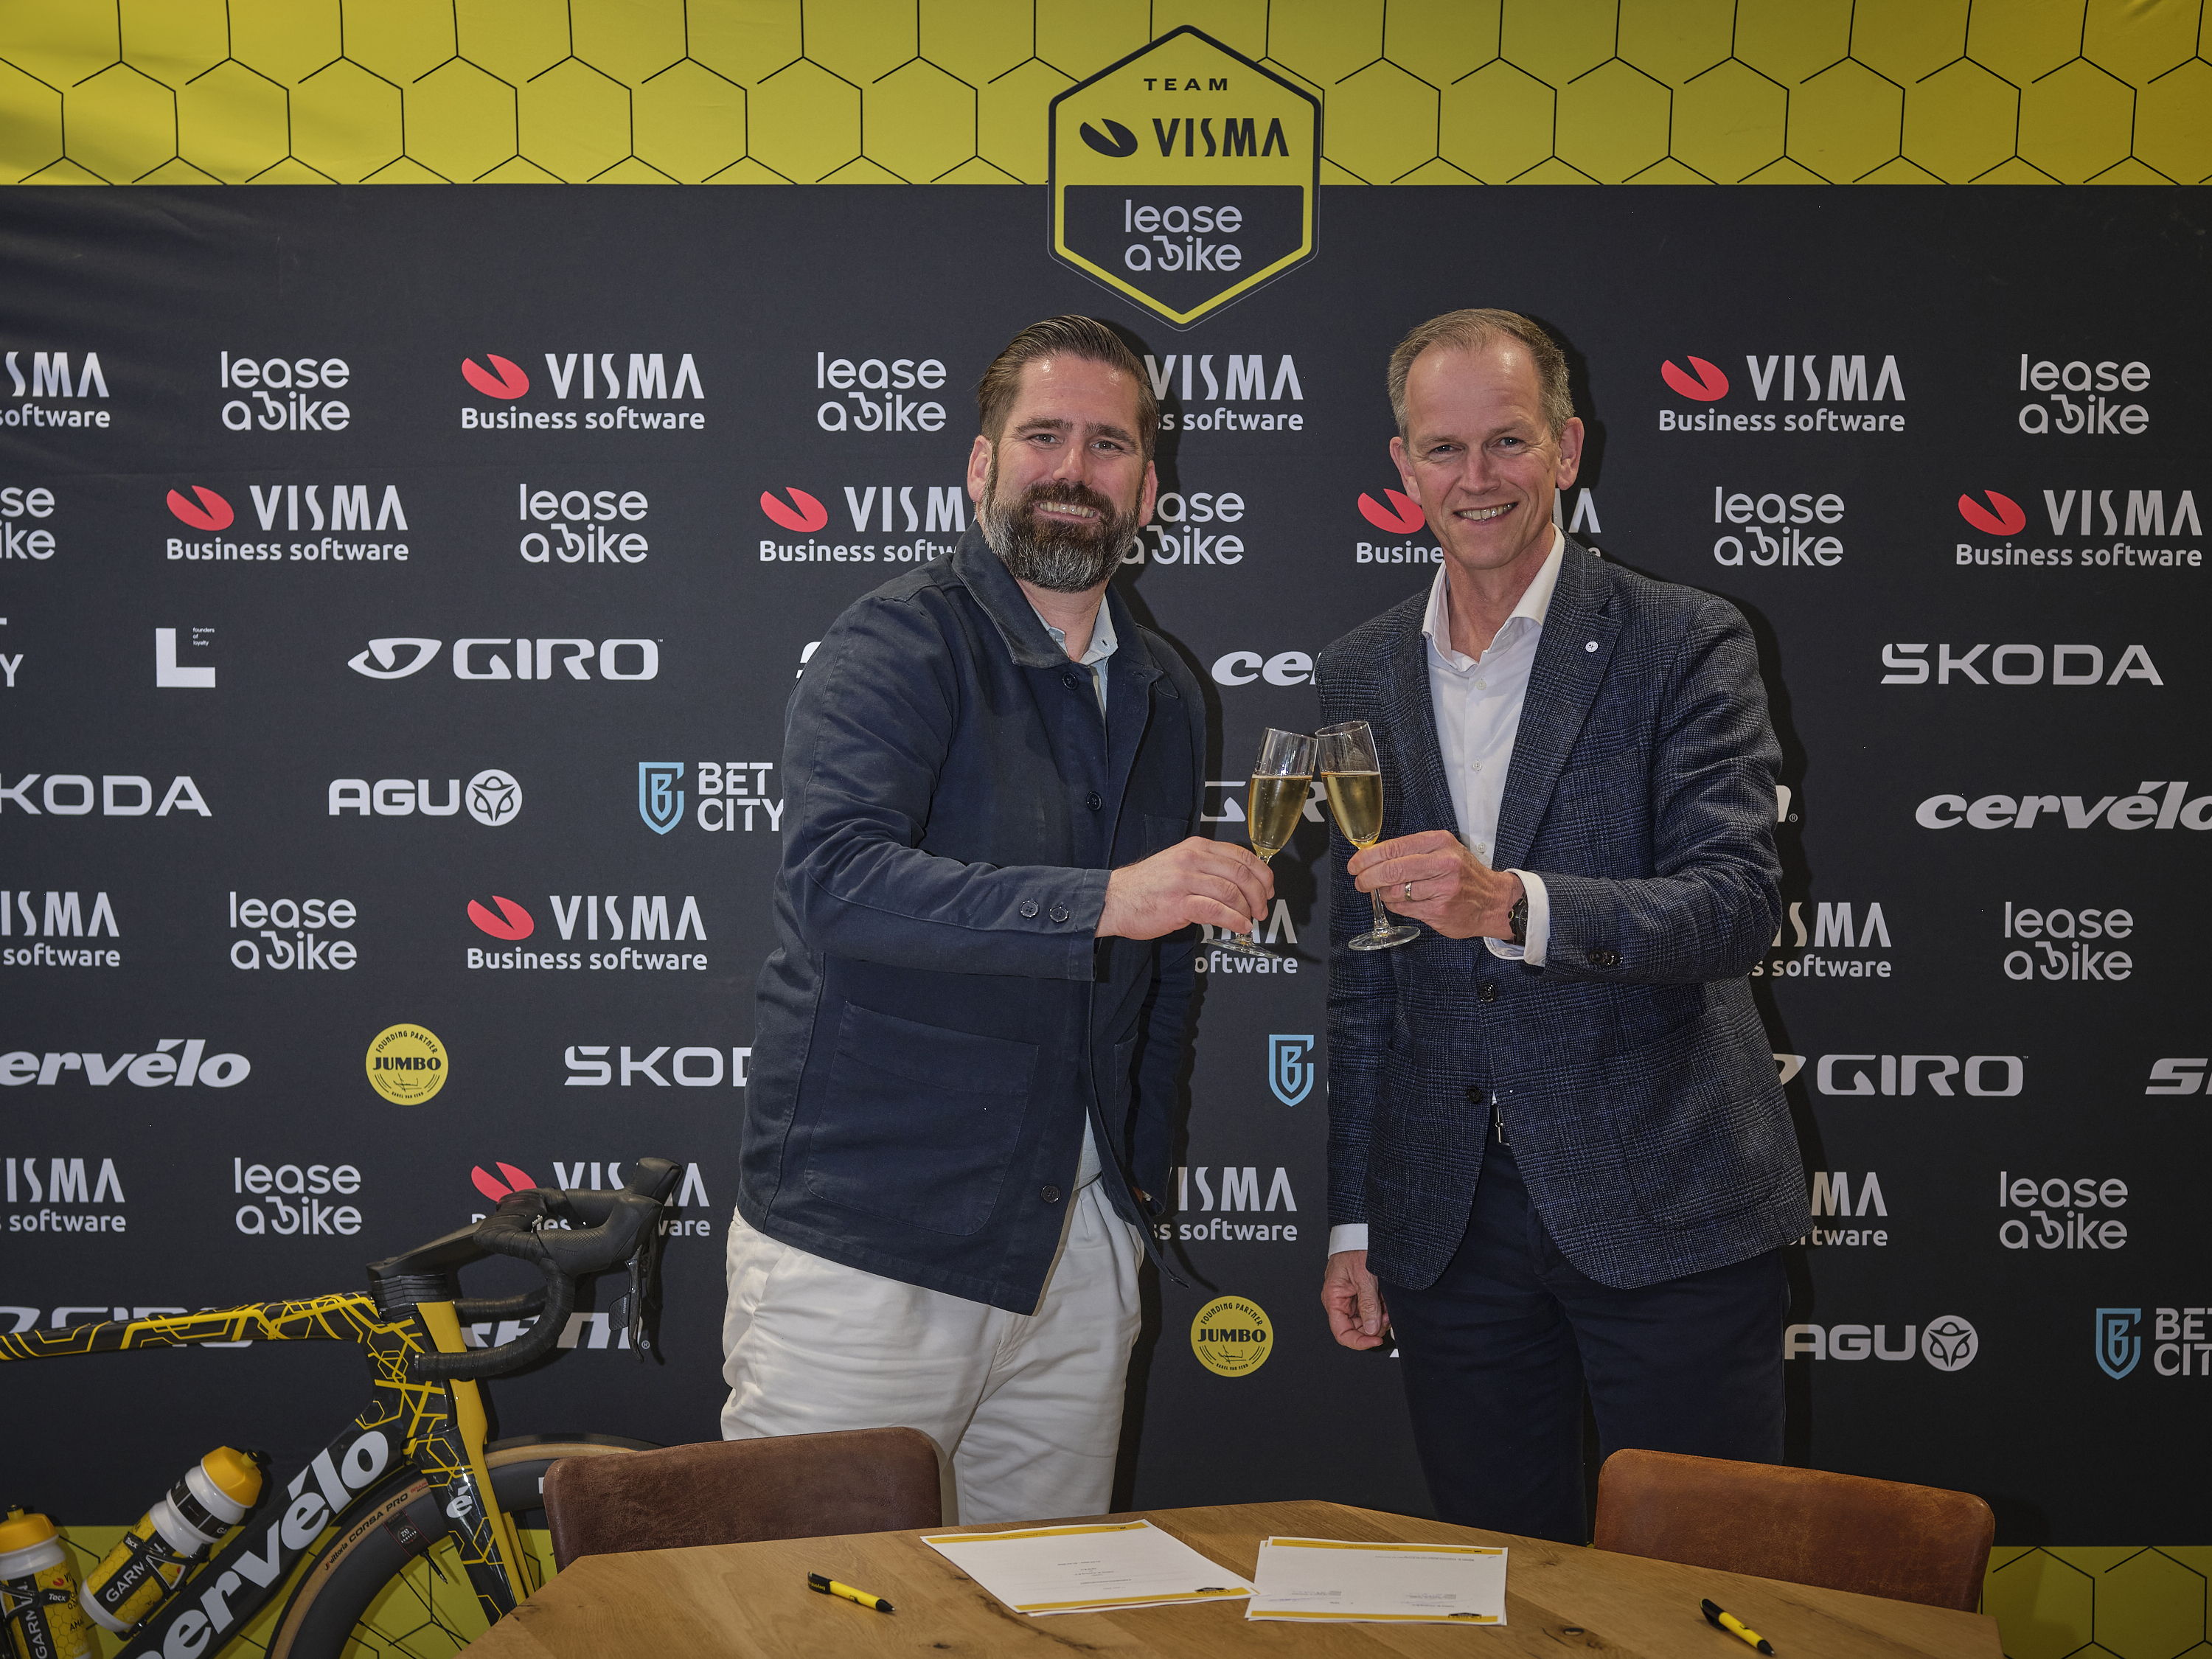 OFM. nieuwe kledingsponsor team Visma | Lease A Bike.